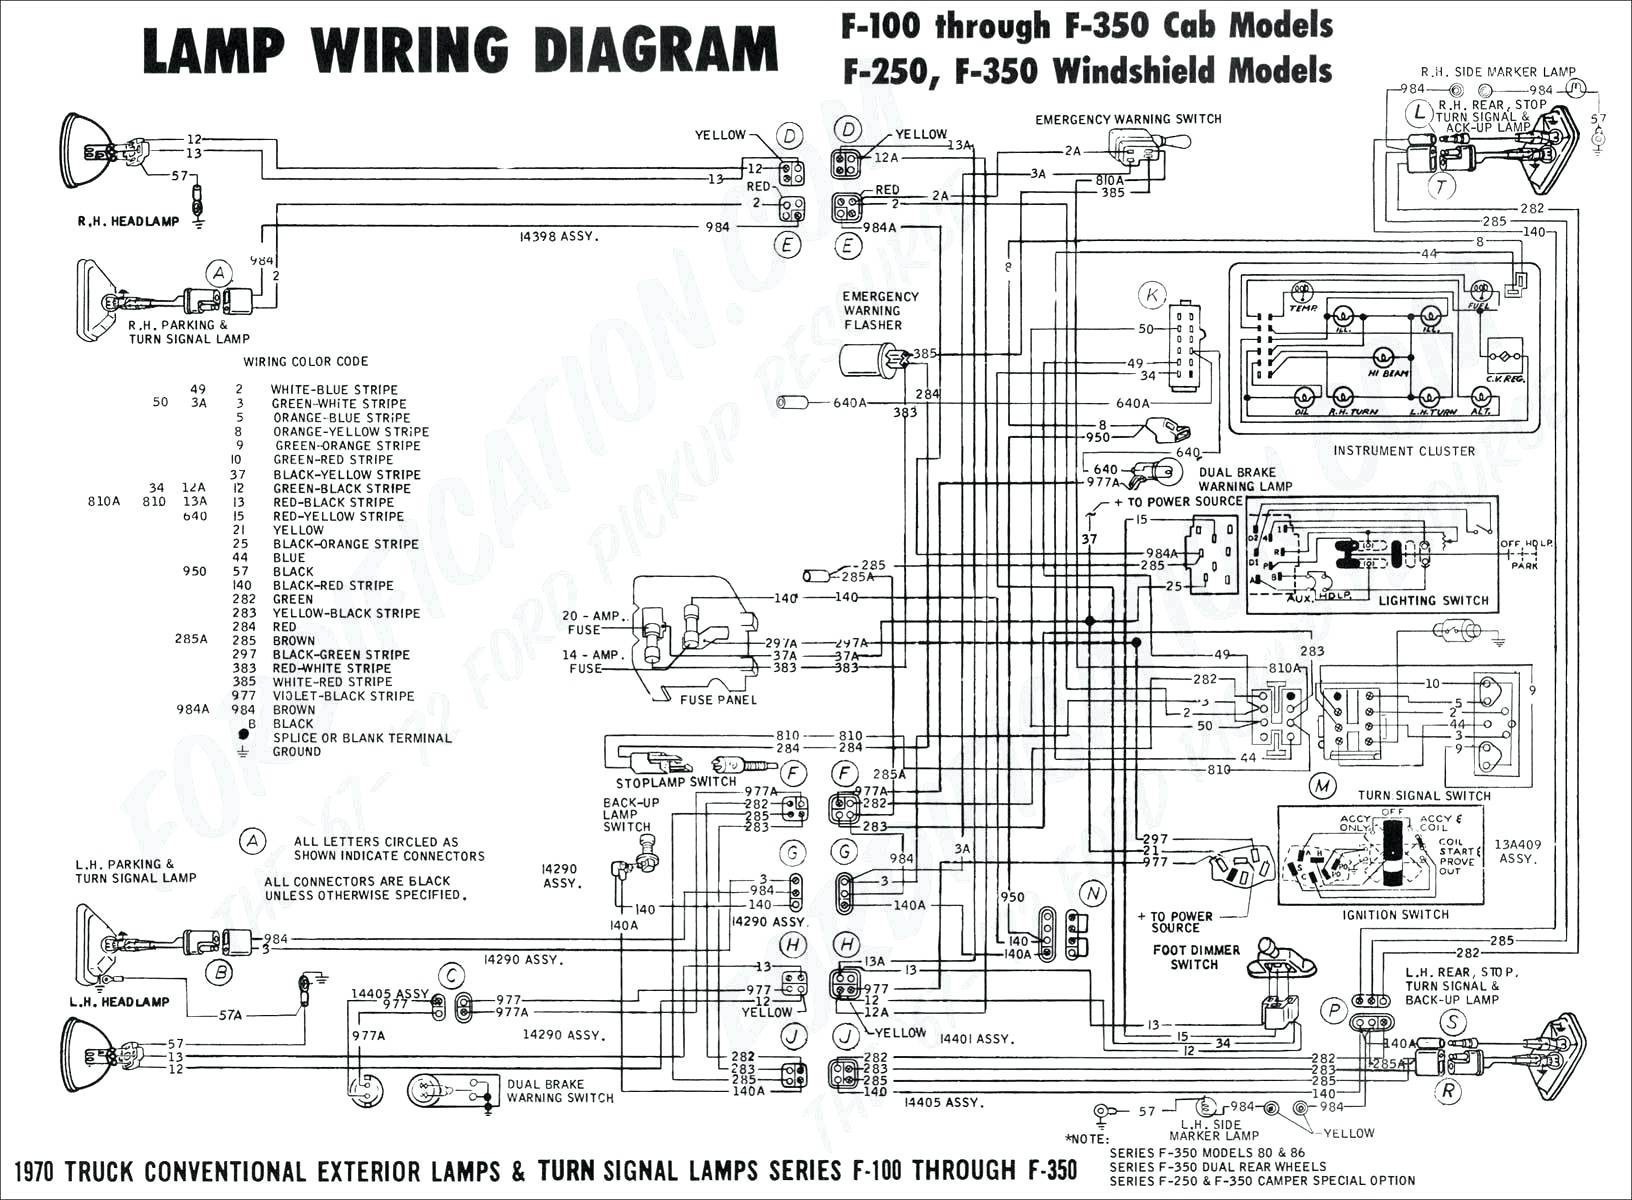 2018 Ez Go Wiring Schematic Lmc Caravan Wiring Diagram Wiring Diagram Data Of 2018 Ez Go Wiring Schematic